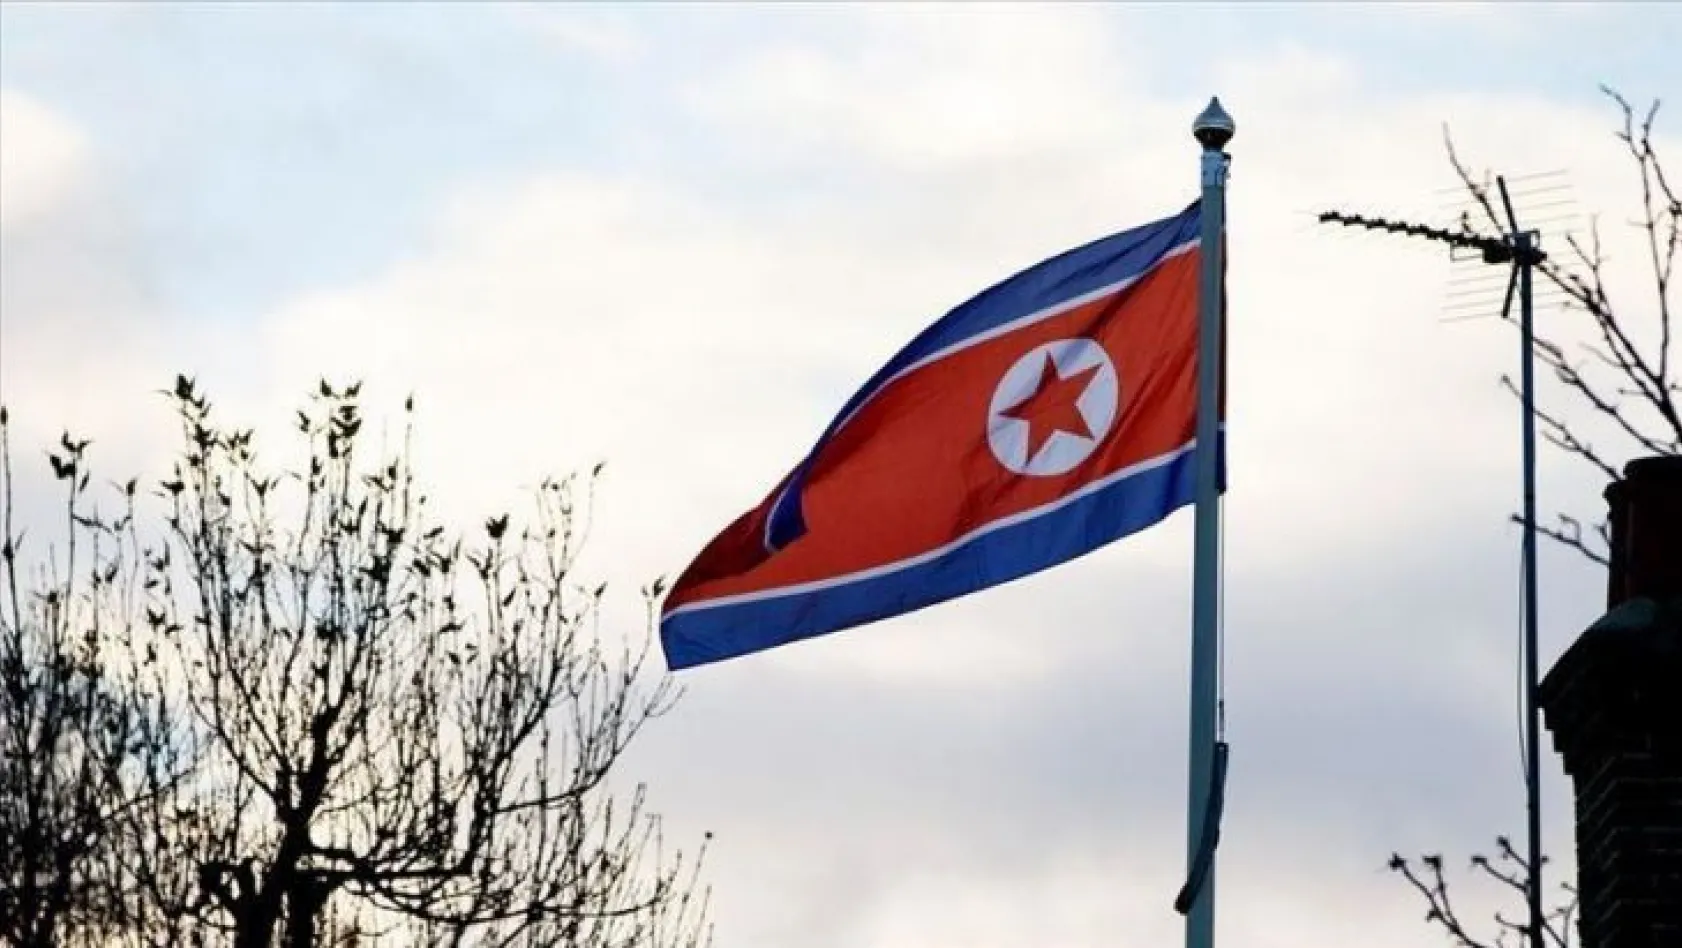 Kuzey Kore'de 11 gün 'gülmek' yasaklandı